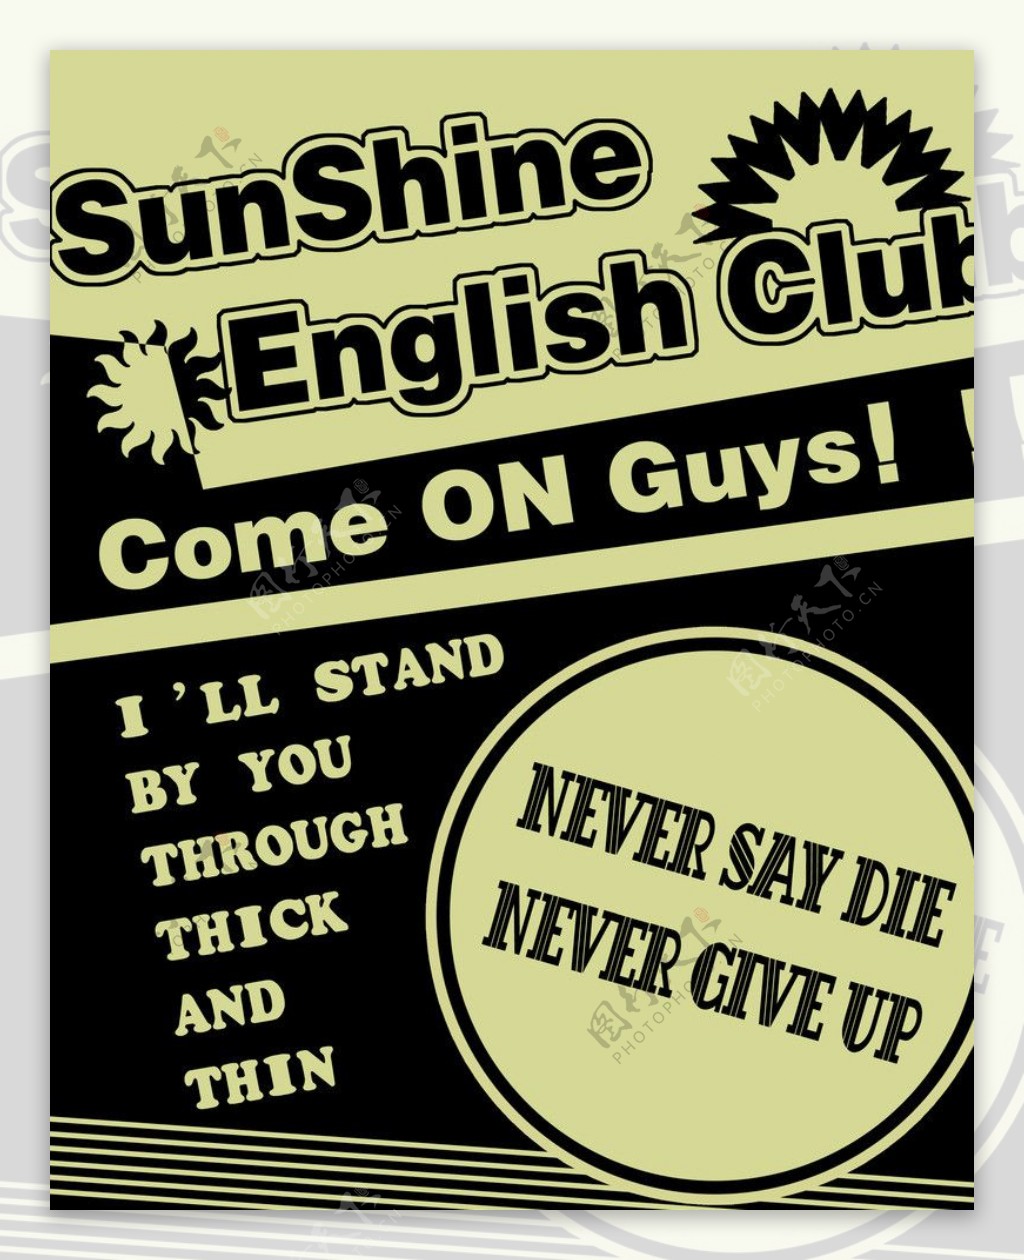 英语海报图片